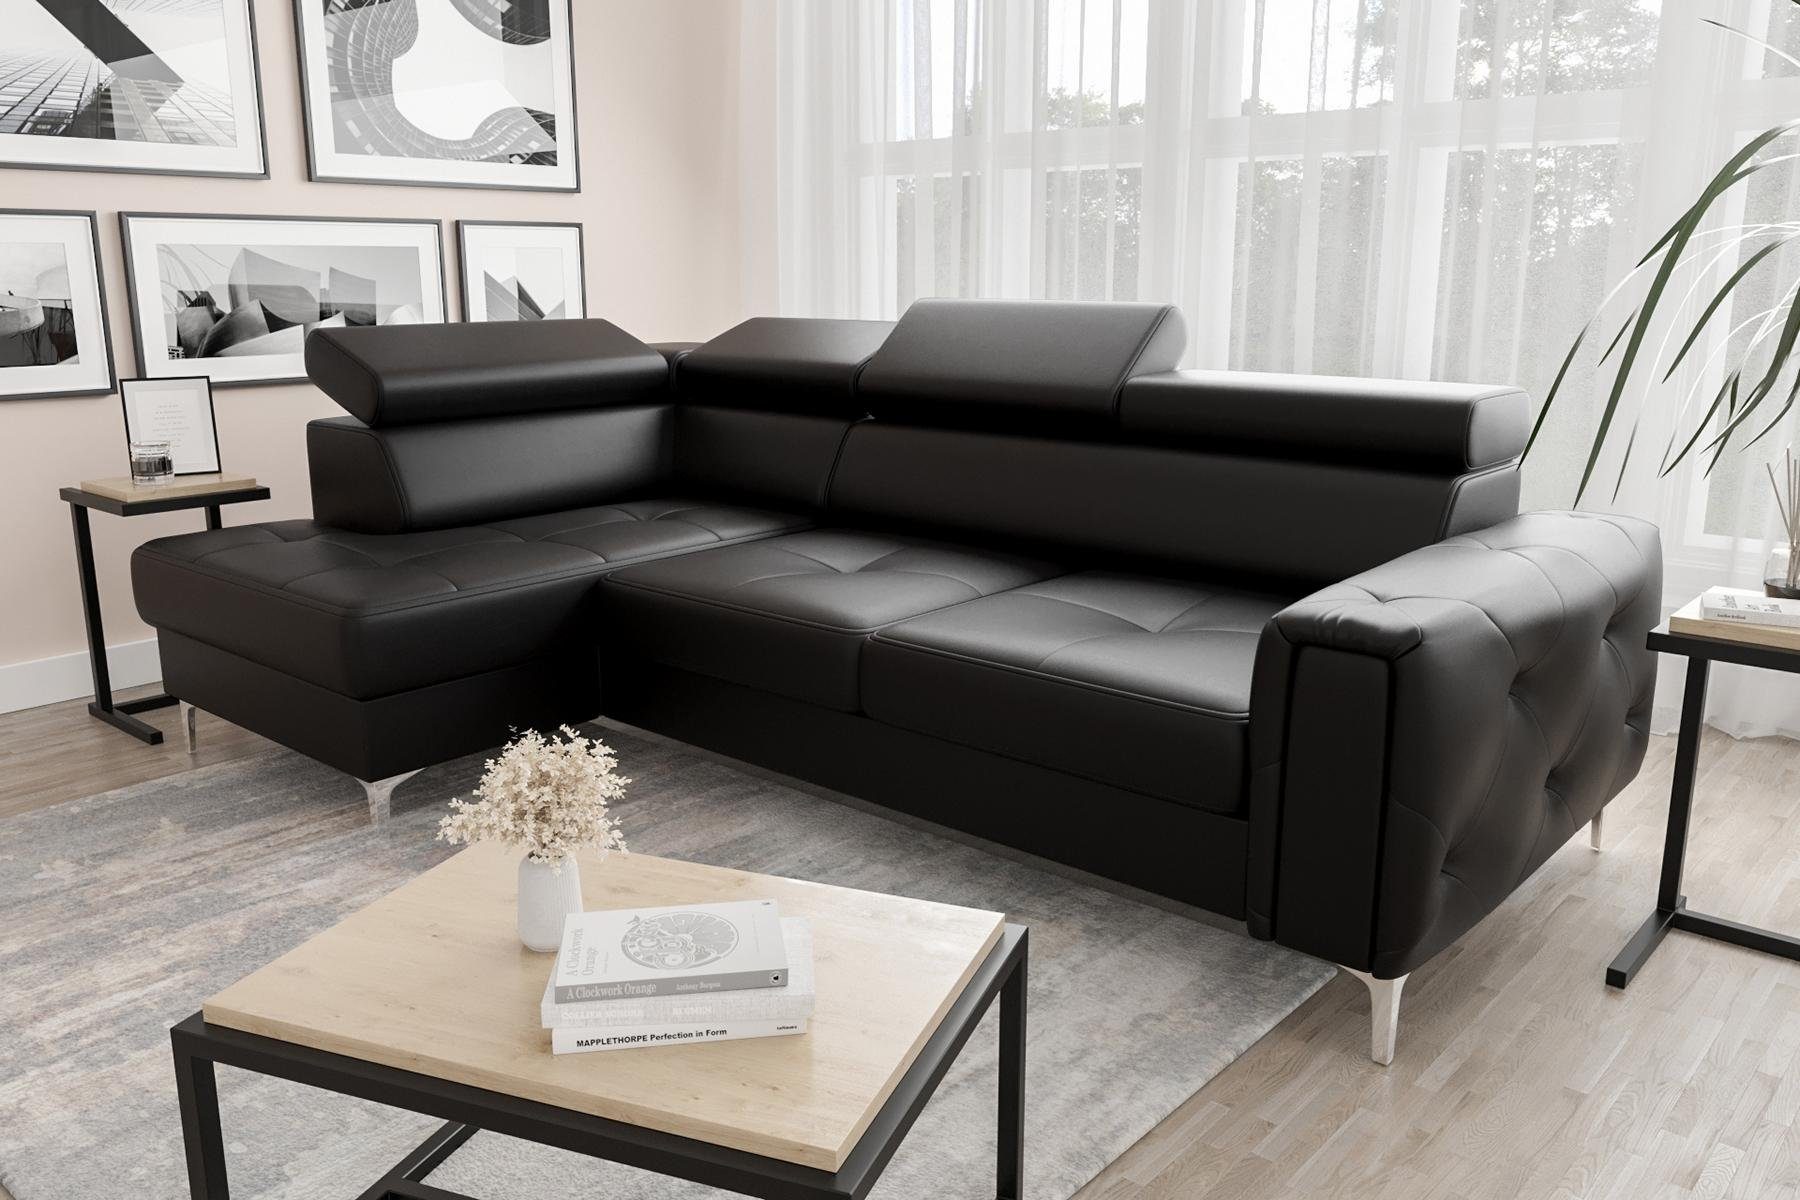 beliebter Saal JVmoebel Ecksofa Ledersofa L-Form Ecke Schwarz Wohnzimmer Europe Couch Design, Made in